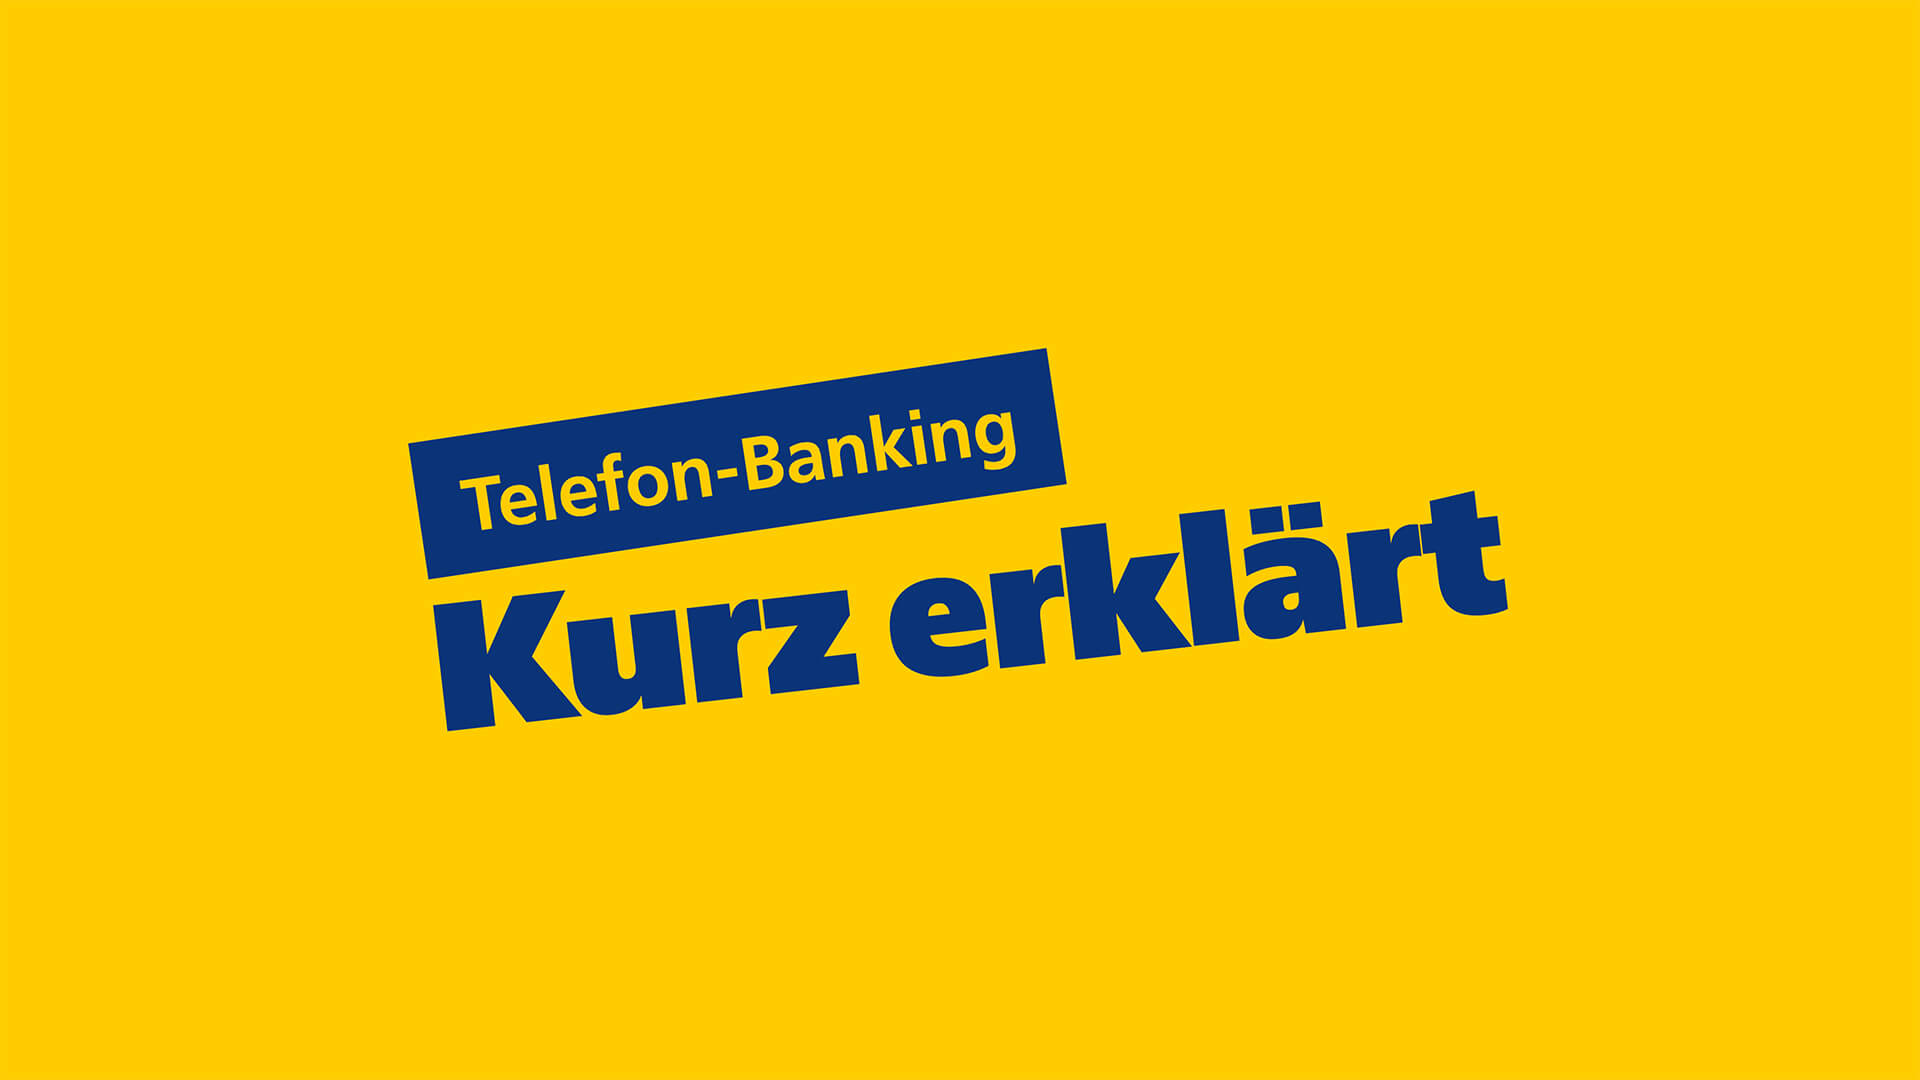 Telefon-Banking kurz erklärt